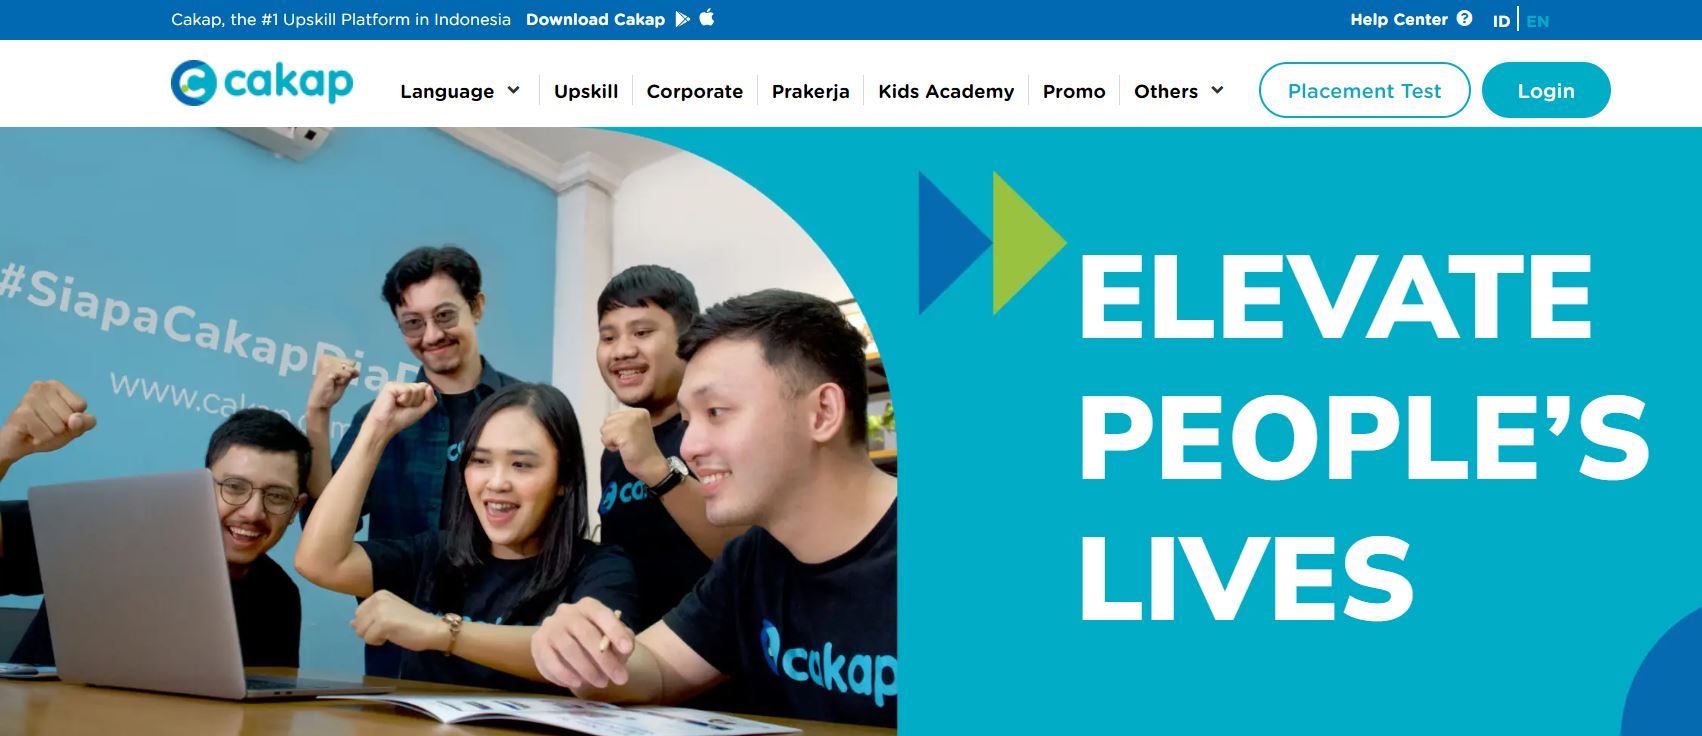 インドネシアEdTechの雄、オンライン外国語学習プラットフォーム「Cakap」とは